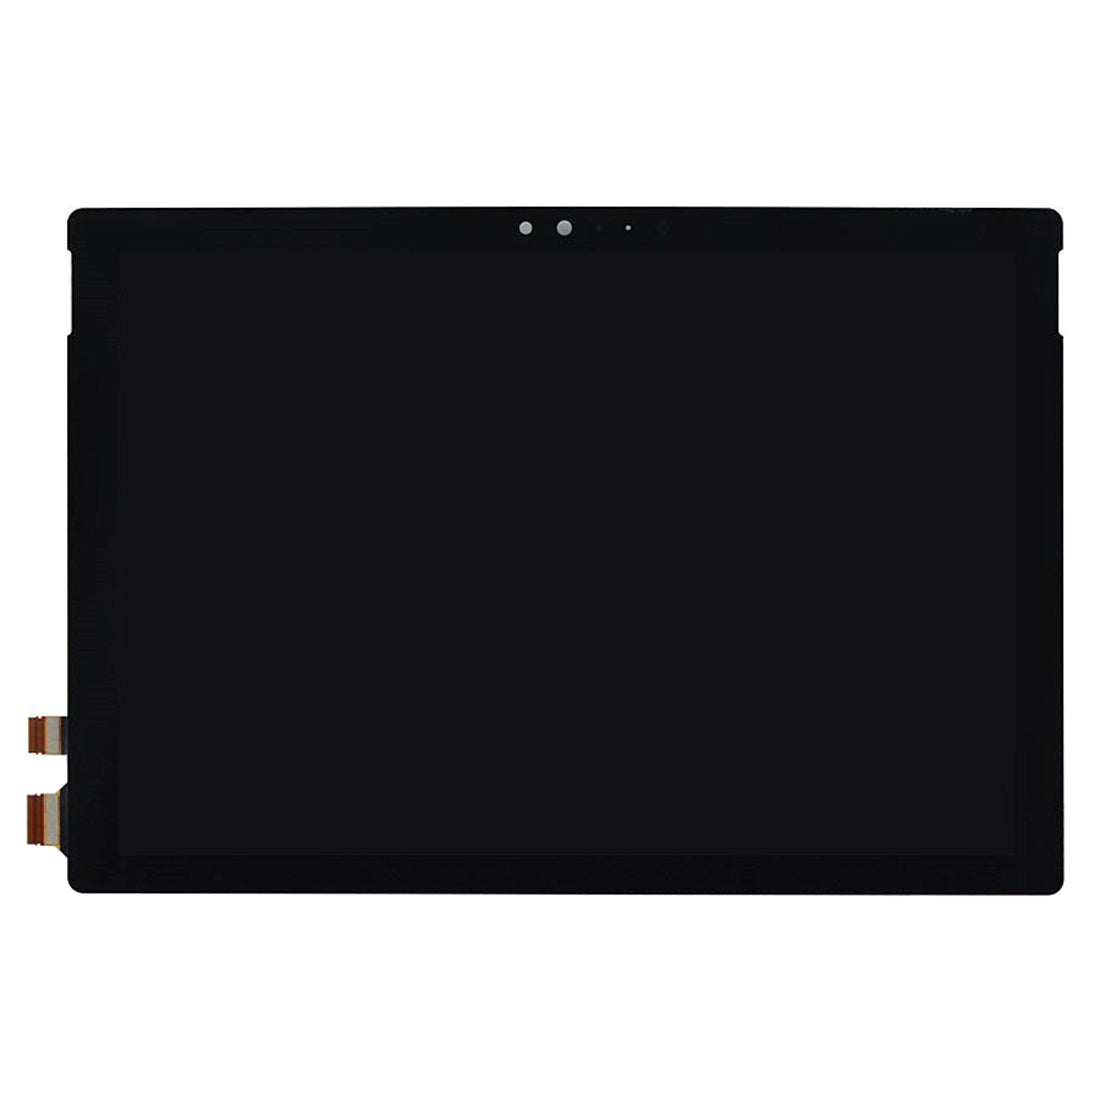 Pantalla LCD + Tactil Digitalizador Microsoft Surface Pro 4 v1.0